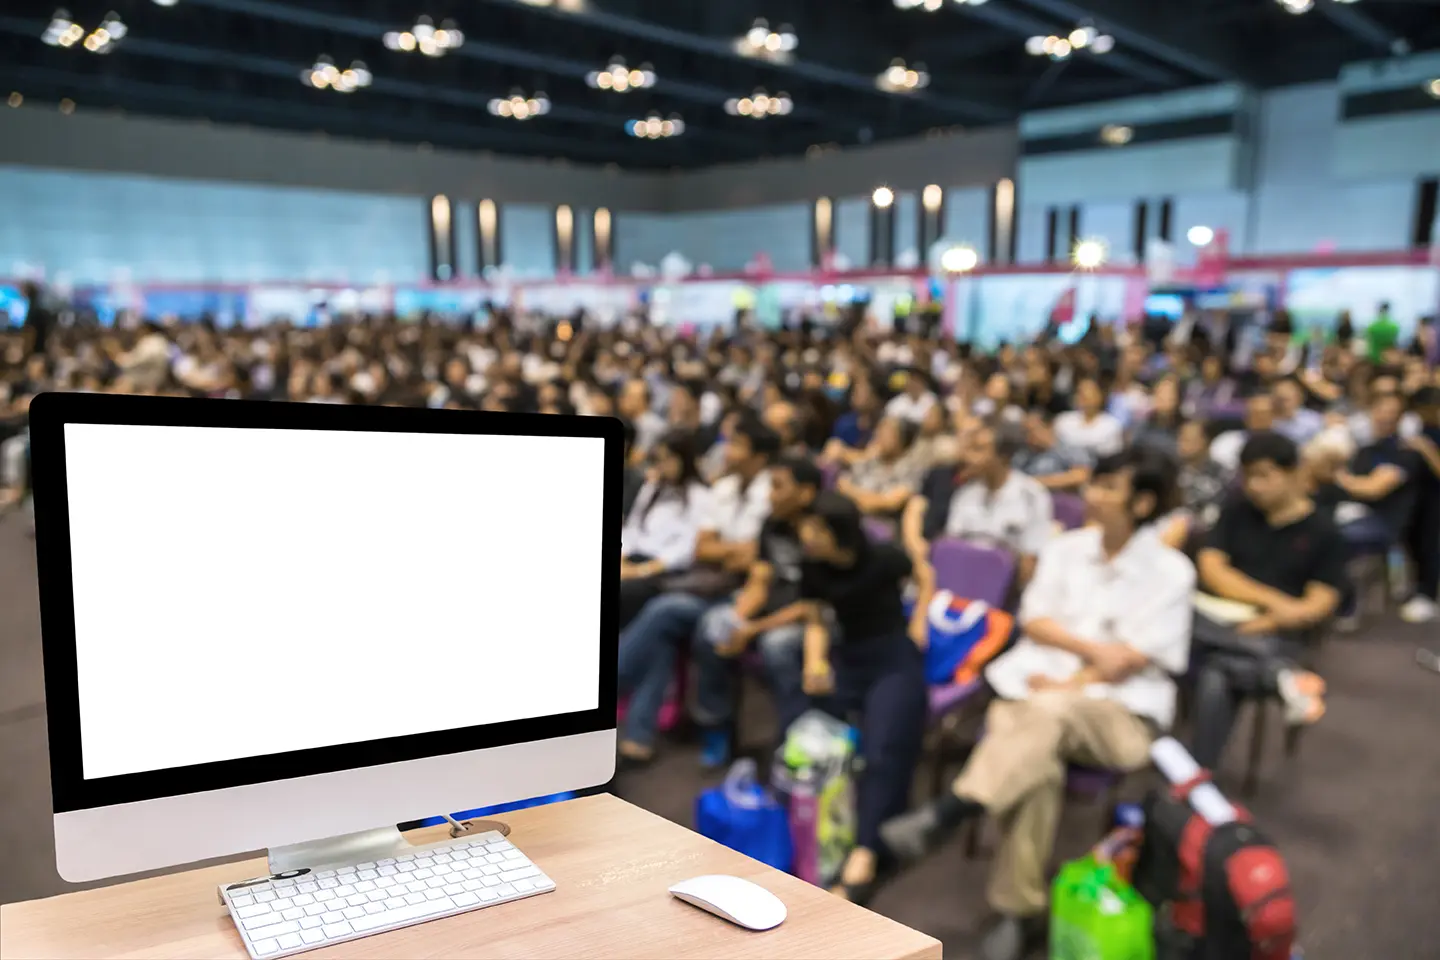 Auditorio con personas reunidas en un evento, escritorio con computadora frente a ellos, mostrando todos los eventos, ferias y congresos de TI en México 2017.